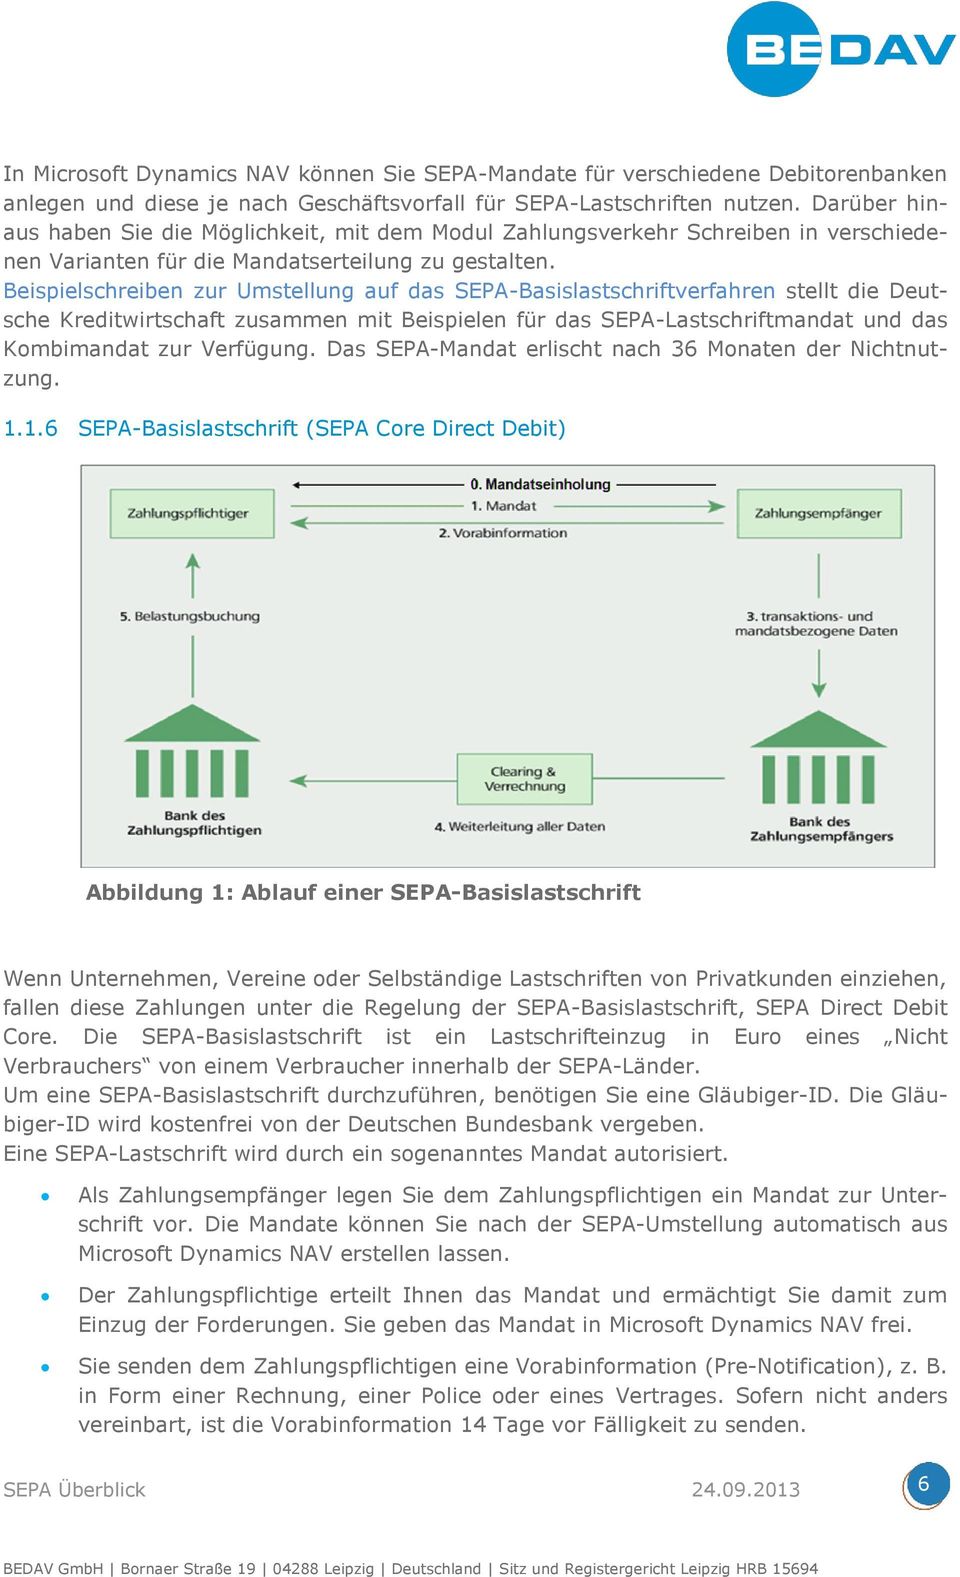 Beispielschreiben zur Umstellung auf das SEPA-Basislastschriftverfahren stellt die Deutsche Kreditwirtschaft zusammen mit Beispielen für das SEPA-Lastschriftmandat und das Kombimandat zur Verfügung.